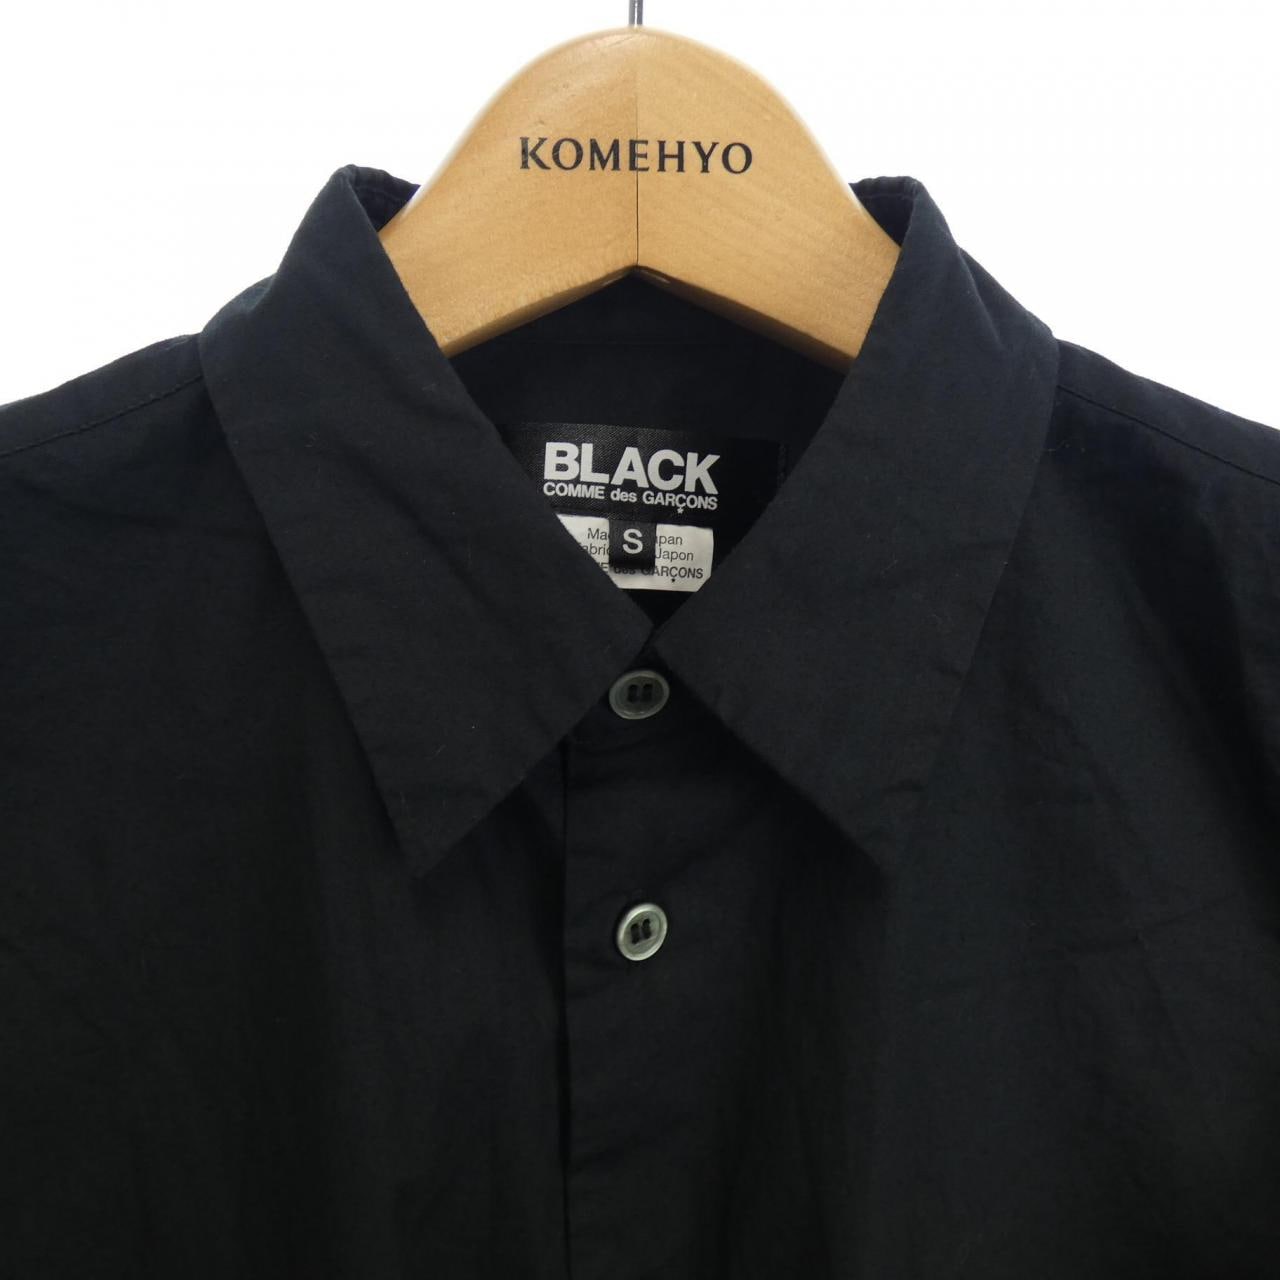 ブラックギャルソン BLACK GARCON'S シャツ